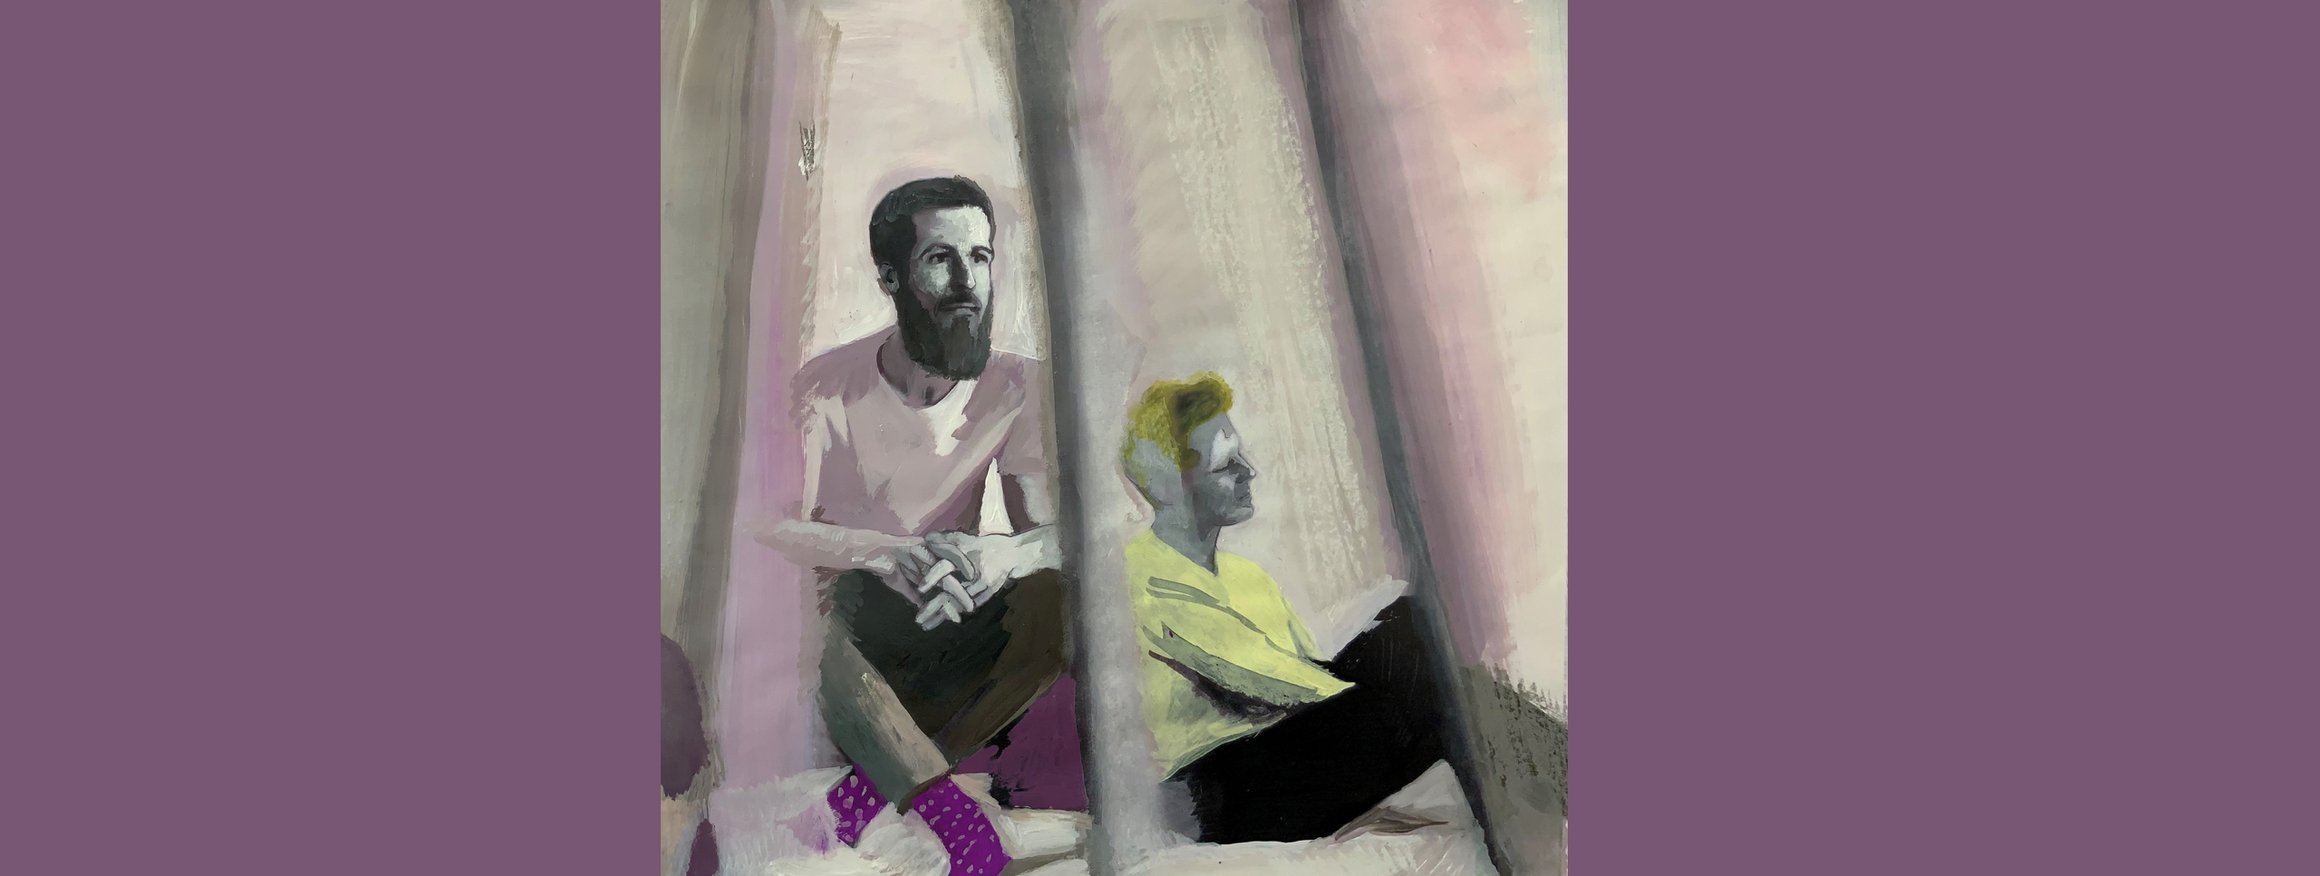 Die Illustration zeigt zwei Männer, die nachdenklich und entspannt auf dem Boden sitzen, an eine Wand gelehnt.